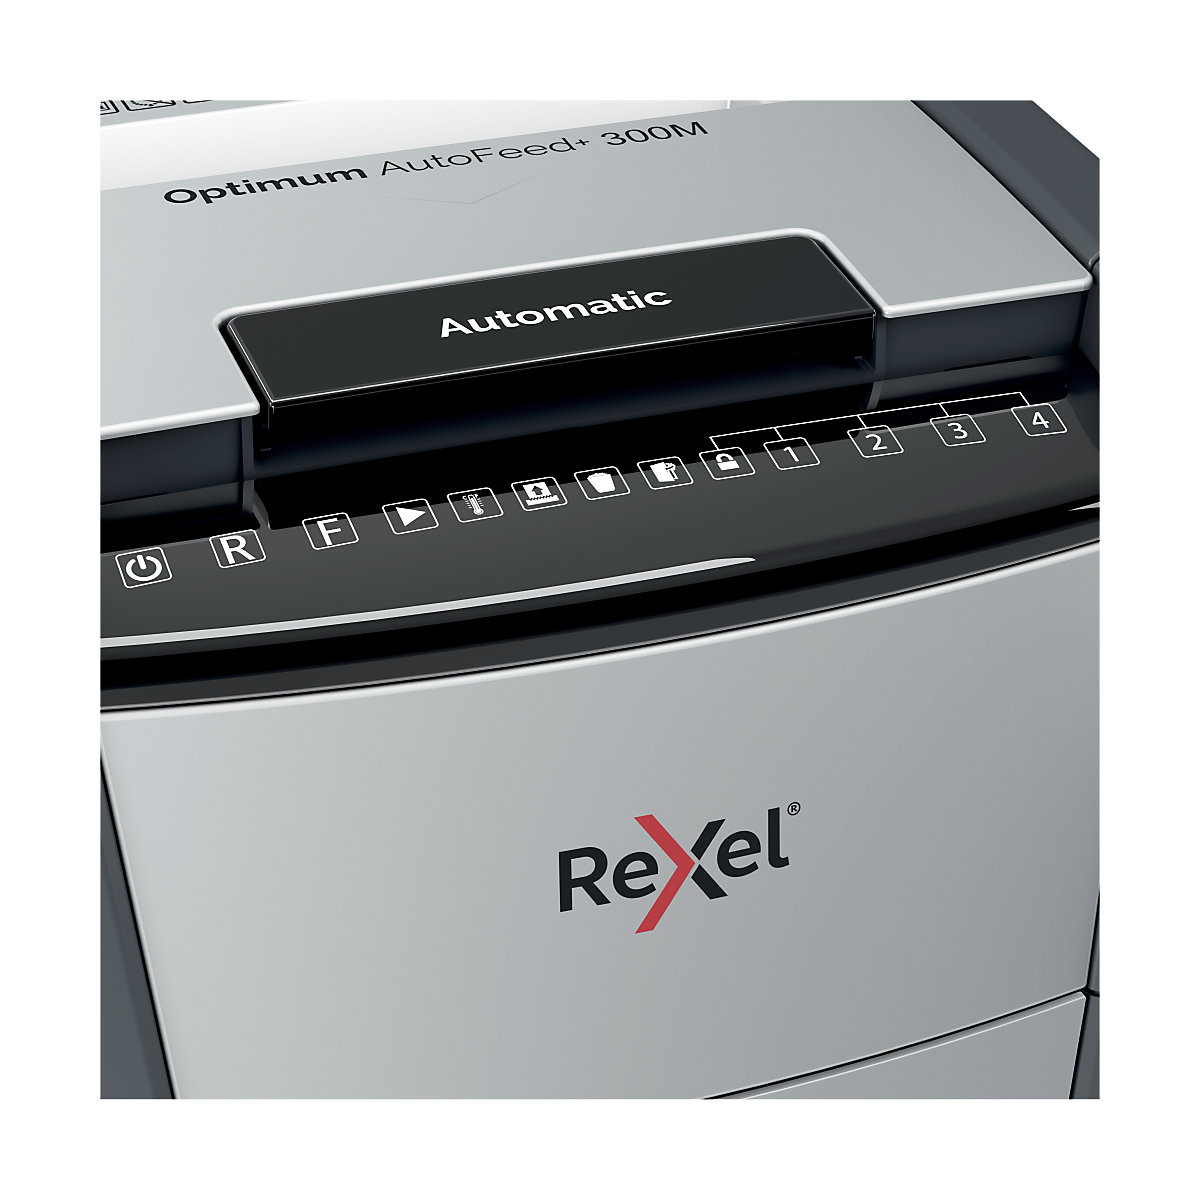 Uništavač dokumenata Optimum AutoFeed+ 300M – Rexel (Prikaz proizvoda 6)-5